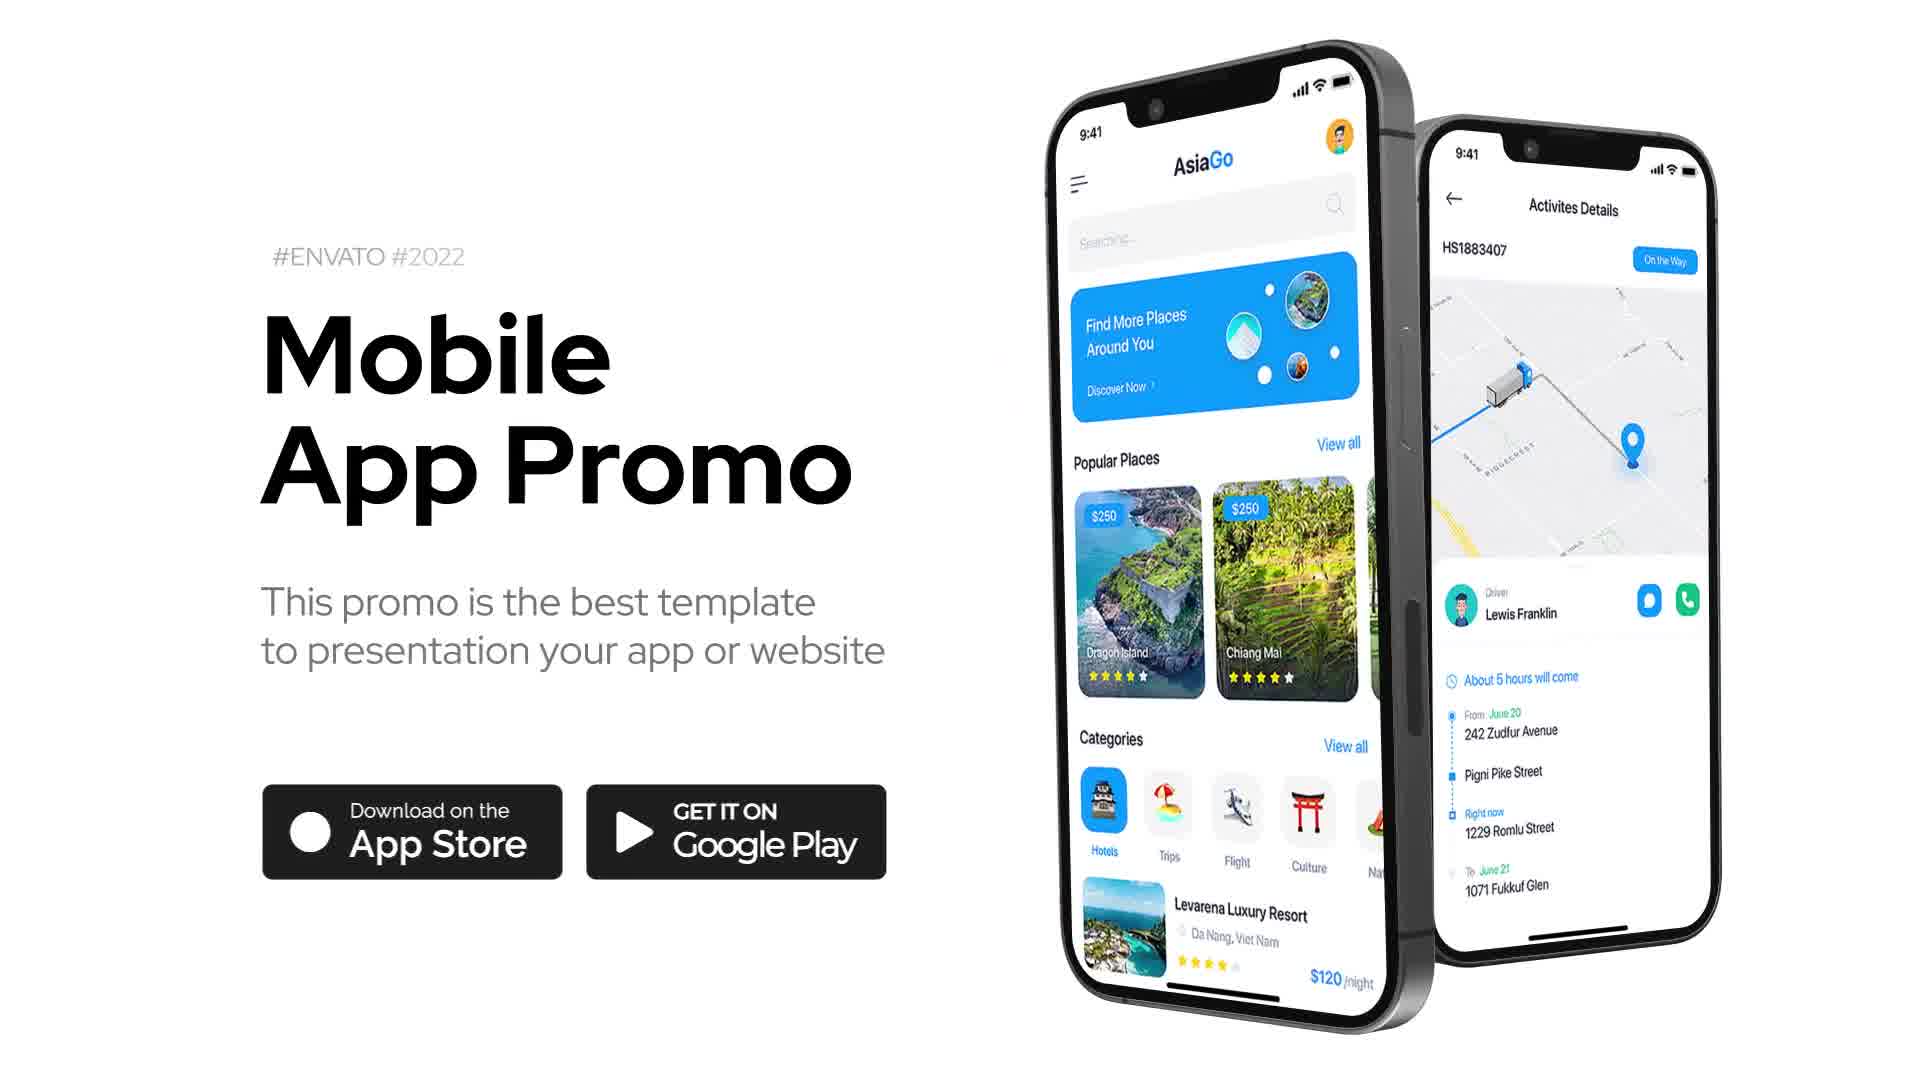 Mobile App Promo for Premiere Pro Videohive 38495584 Premiere Pro Image 12